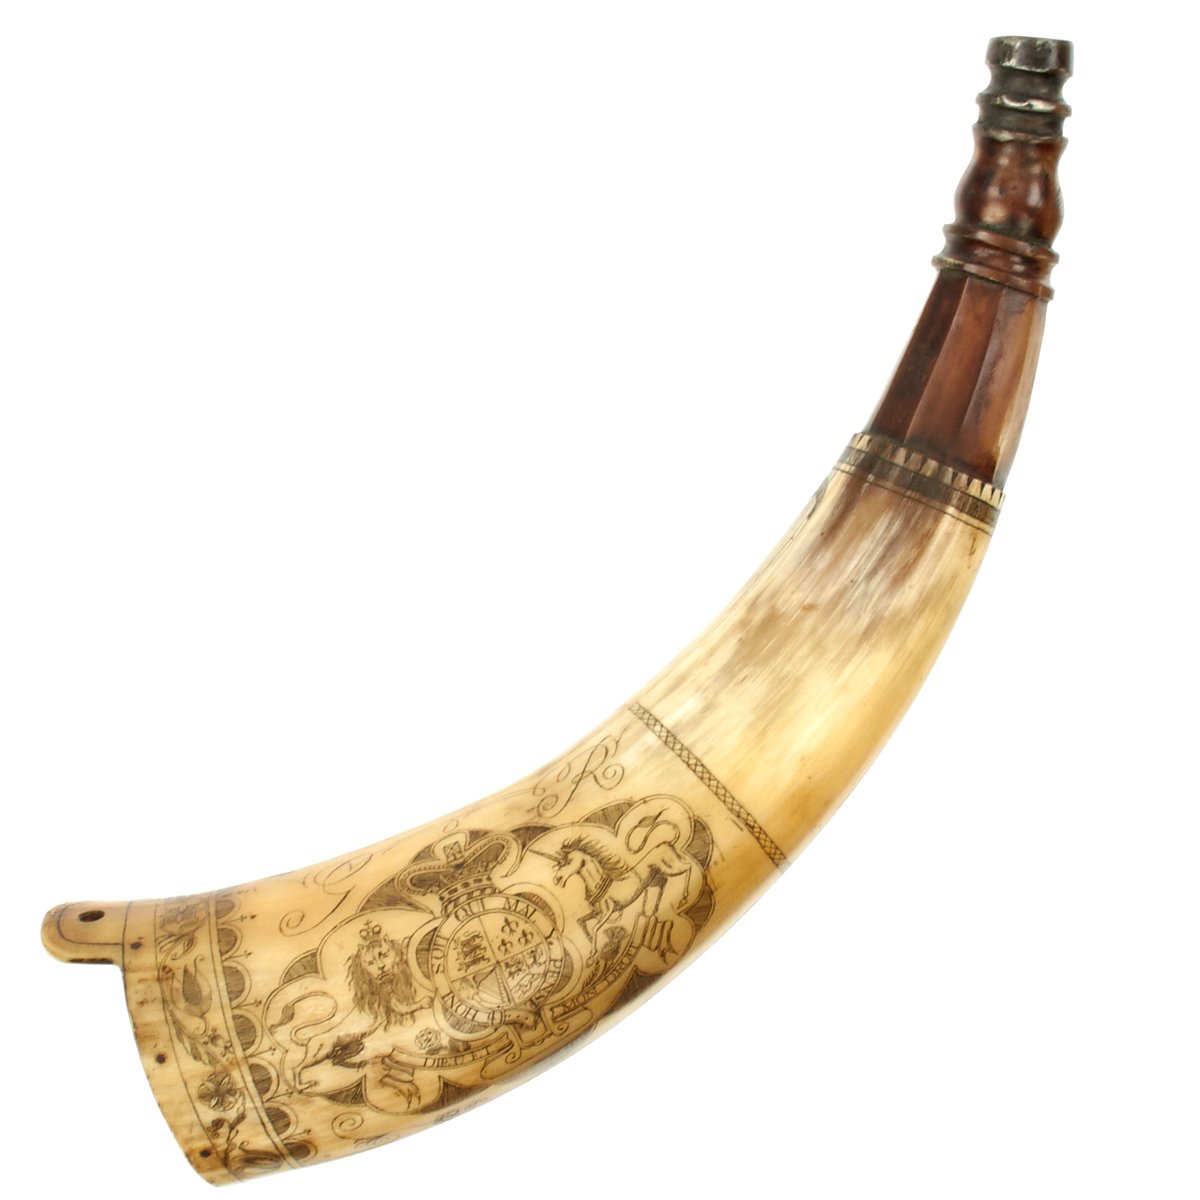 Original Antique Canadian Powder Horn